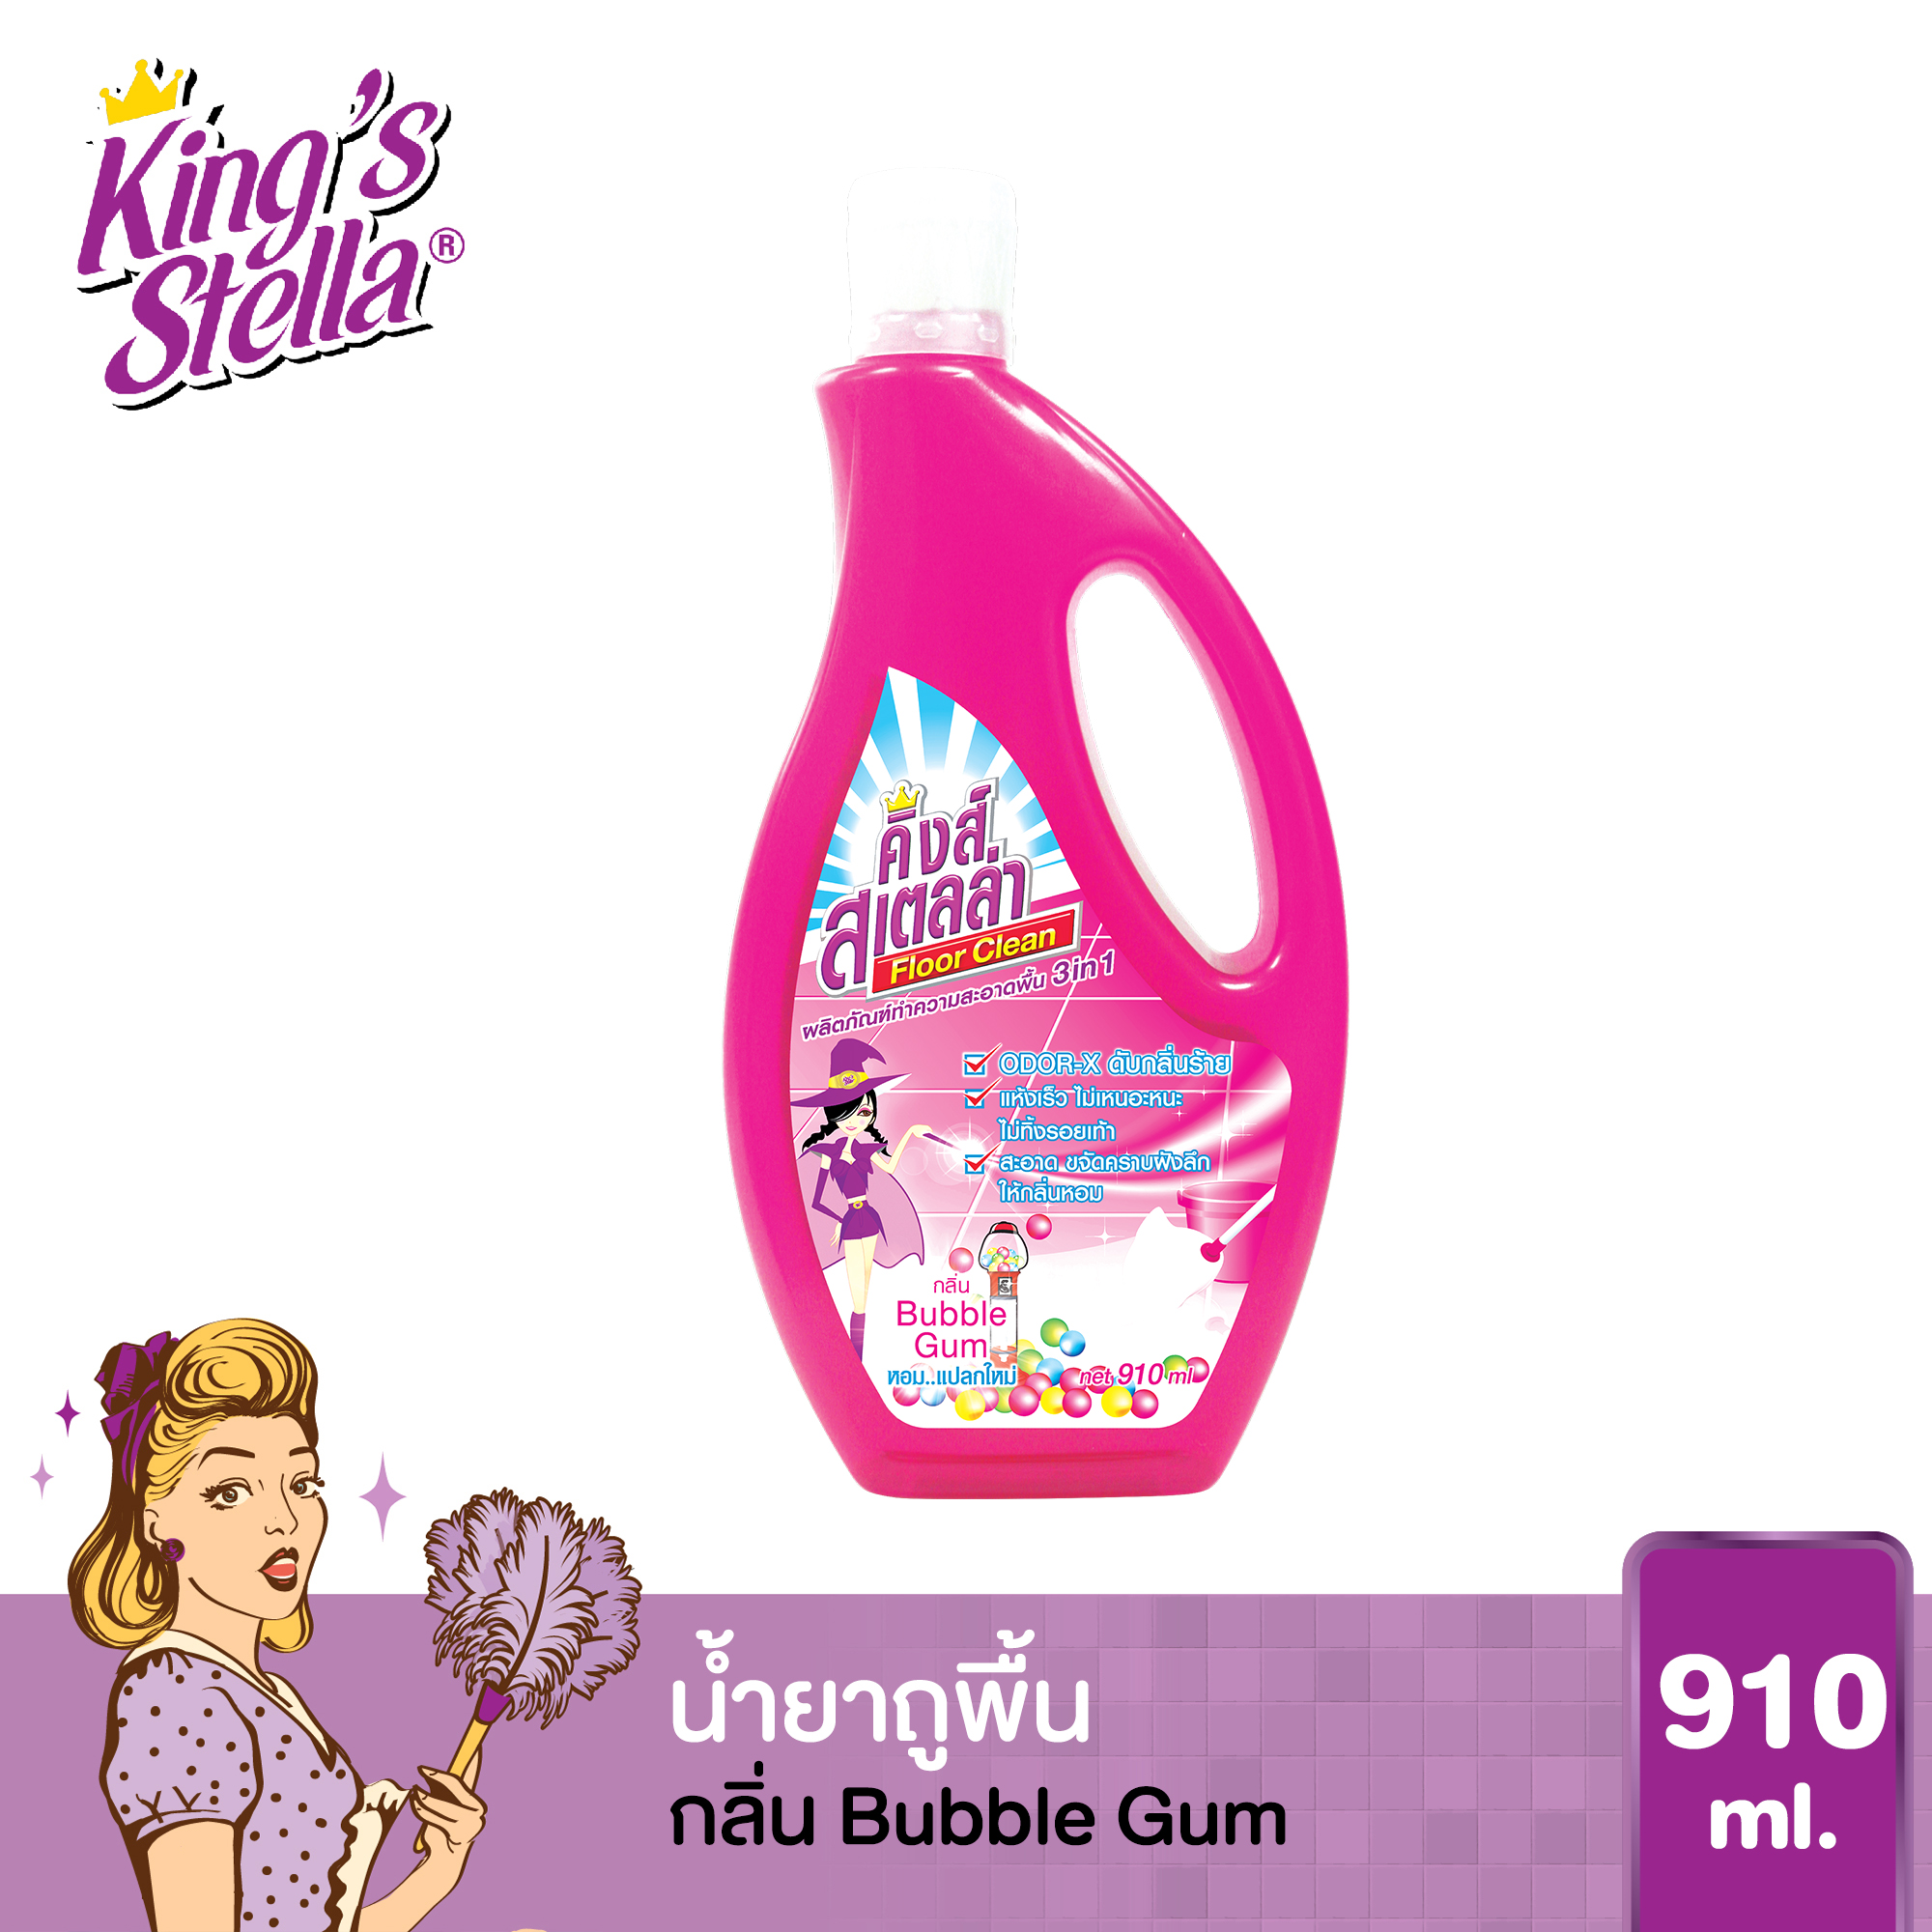 น้ำยาถูพื้น ขจัดกลิ่นอับ กลิ่นอันไม่พึงประสงค์ได้ในทันที King's Stella Floor Clean 910ml. กลิ่น Bubble Gum